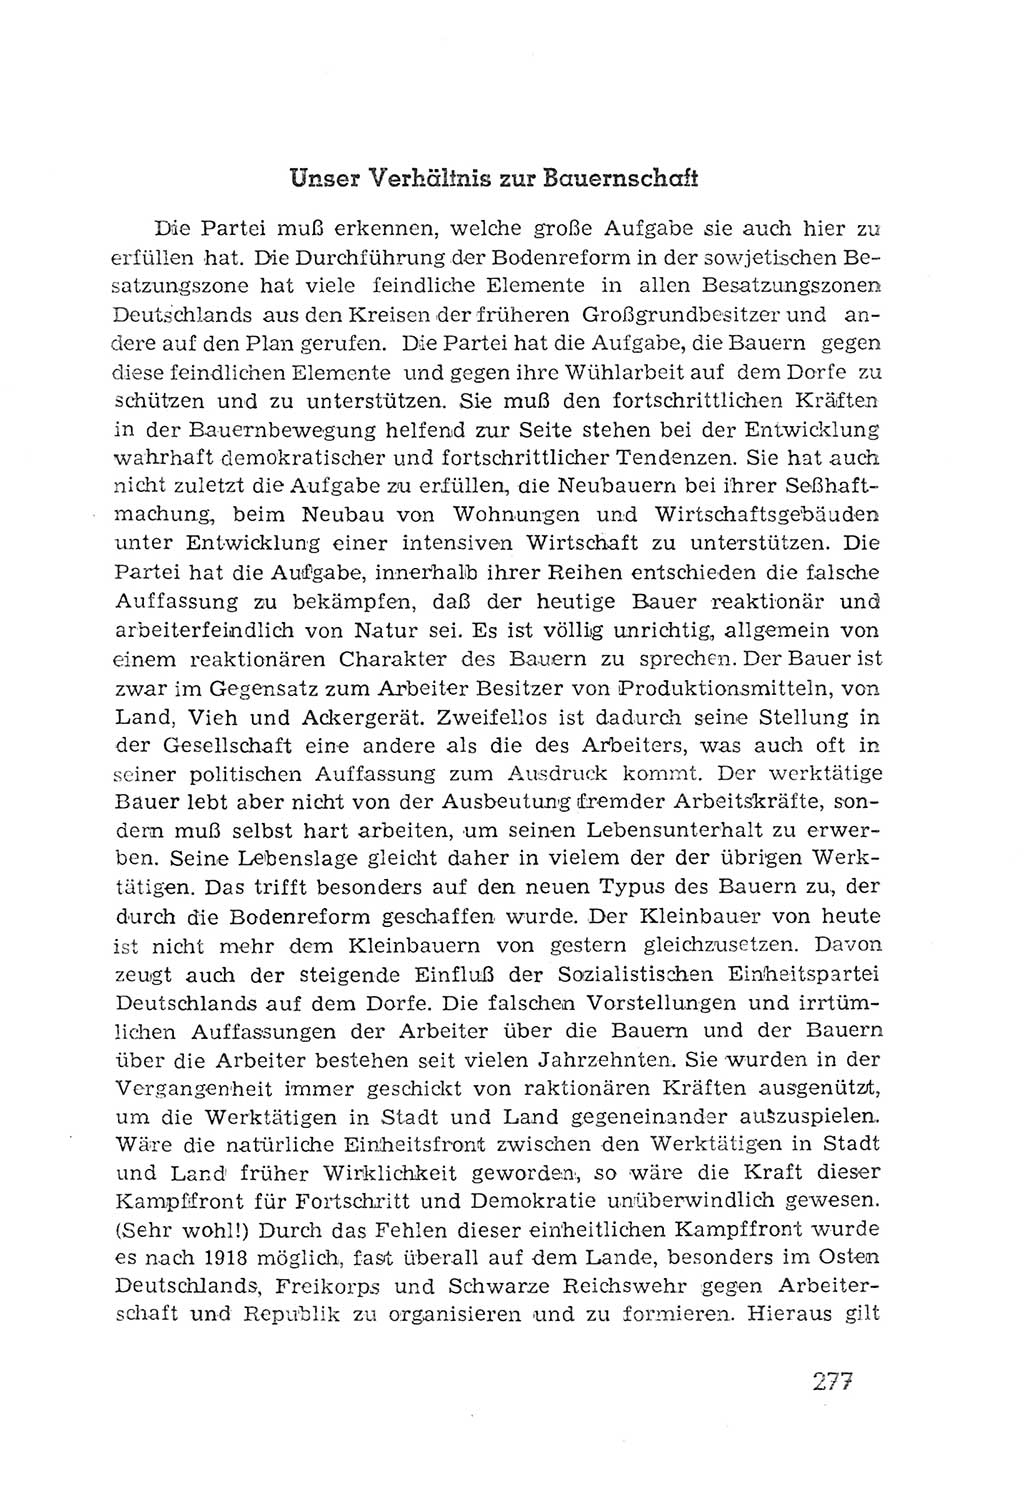 Protokoll der Verhandlungen des 2. Parteitages der Sozialistischen Einheitspartei Deutschlands (SED) [Sowjetische Besatzungszone (SBZ) Deutschlands] 1947, Seite 277 (Prot. Verh. 2. PT SED SBZ Dtl. 1947, S. 277)